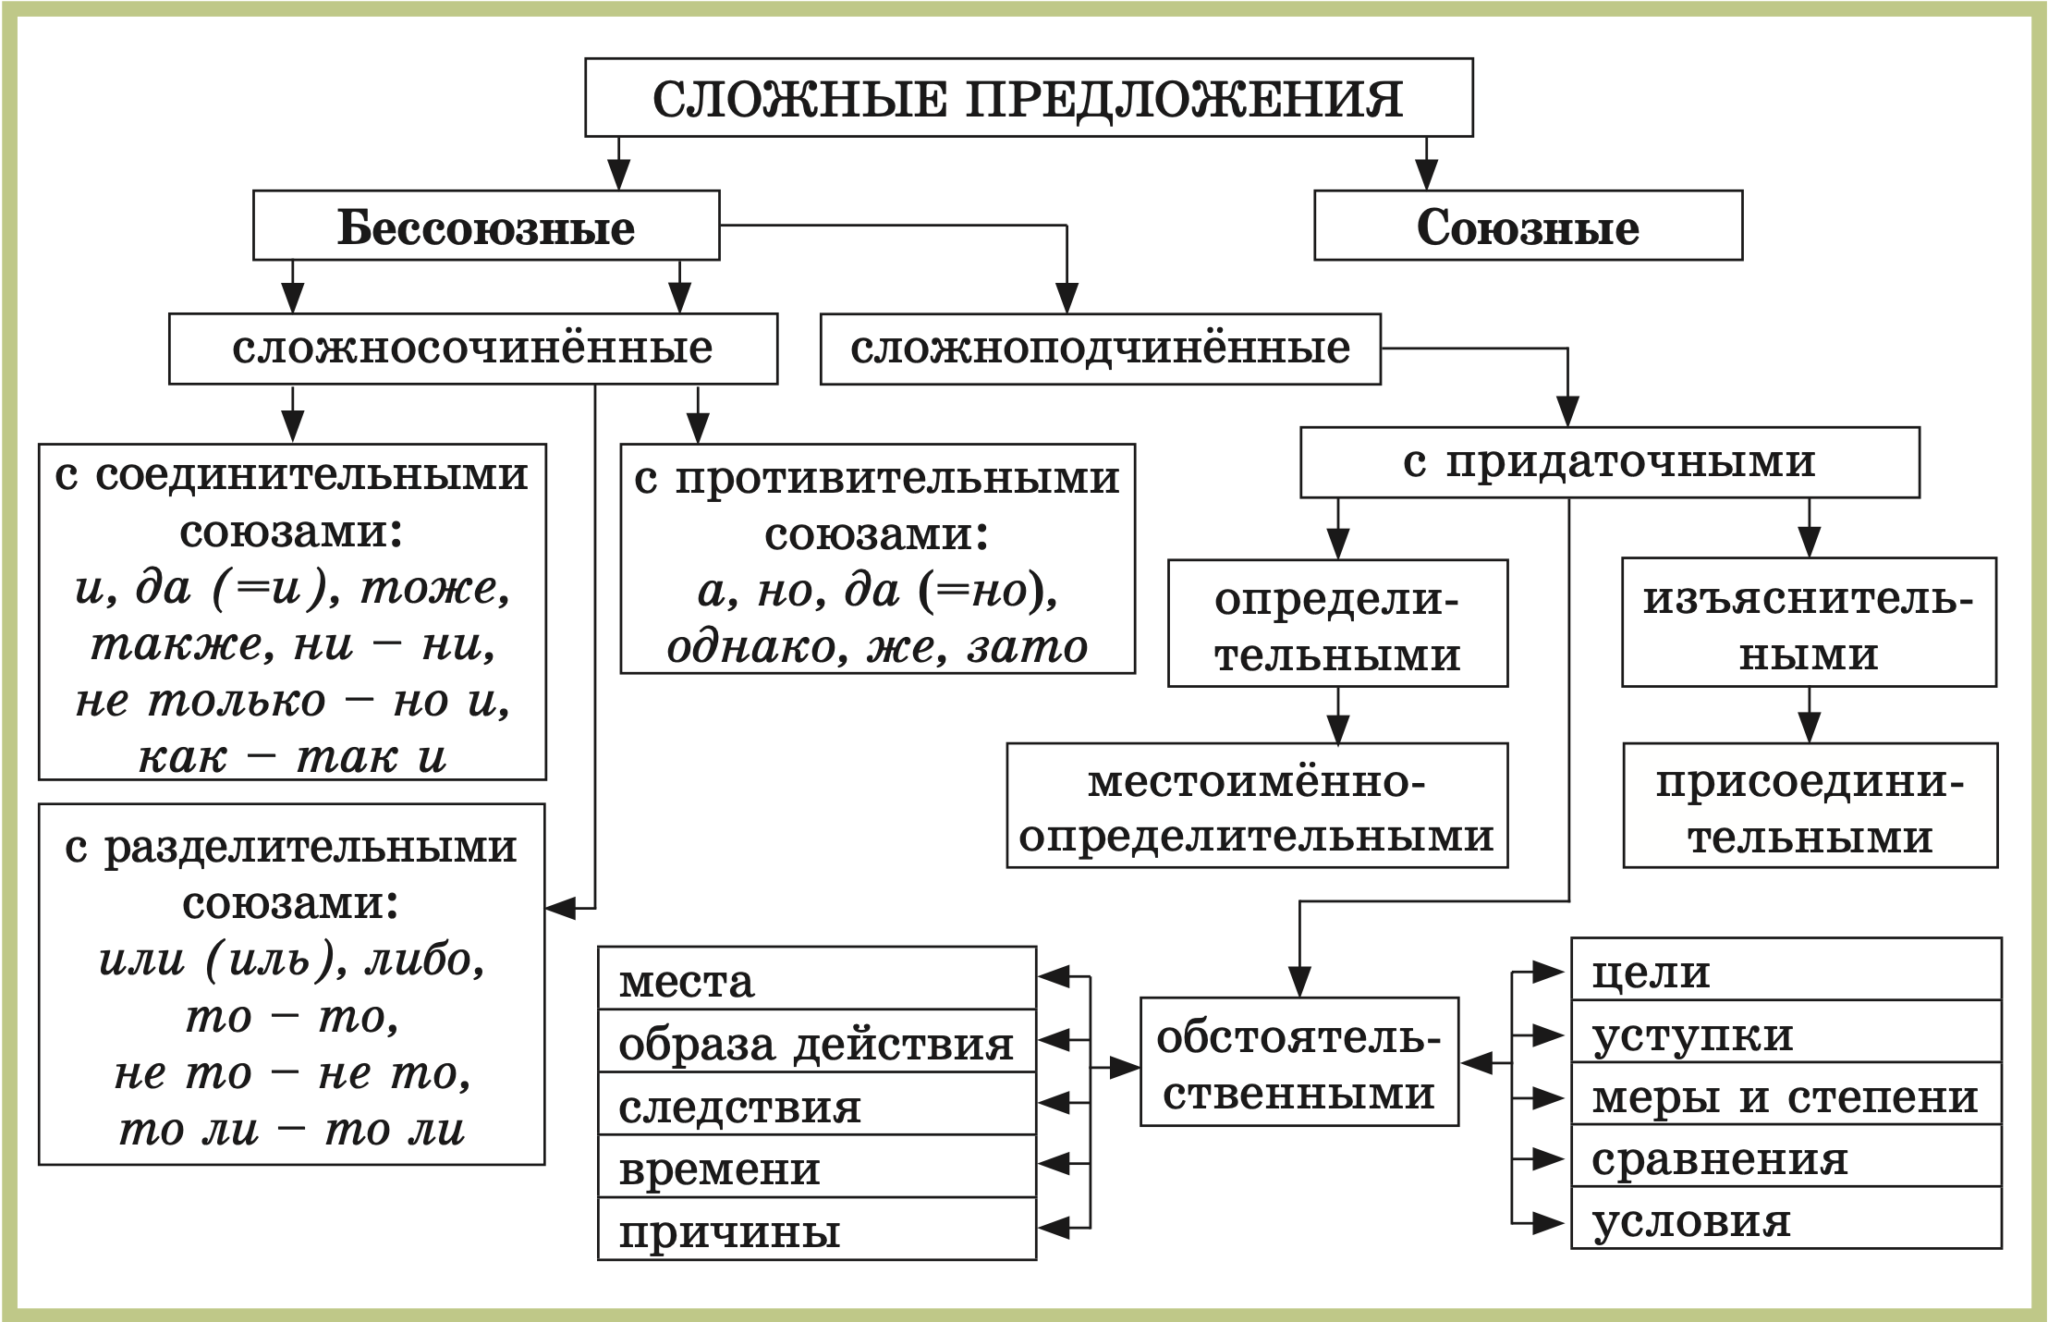 Союзные предложения бывают. Схемы русский язык 5 класс виды сложных предложений. Схема виды сложных предложений 9 класс. Схема сложного предложения 5 класс. Схема сложного предложения сложносочиненного.